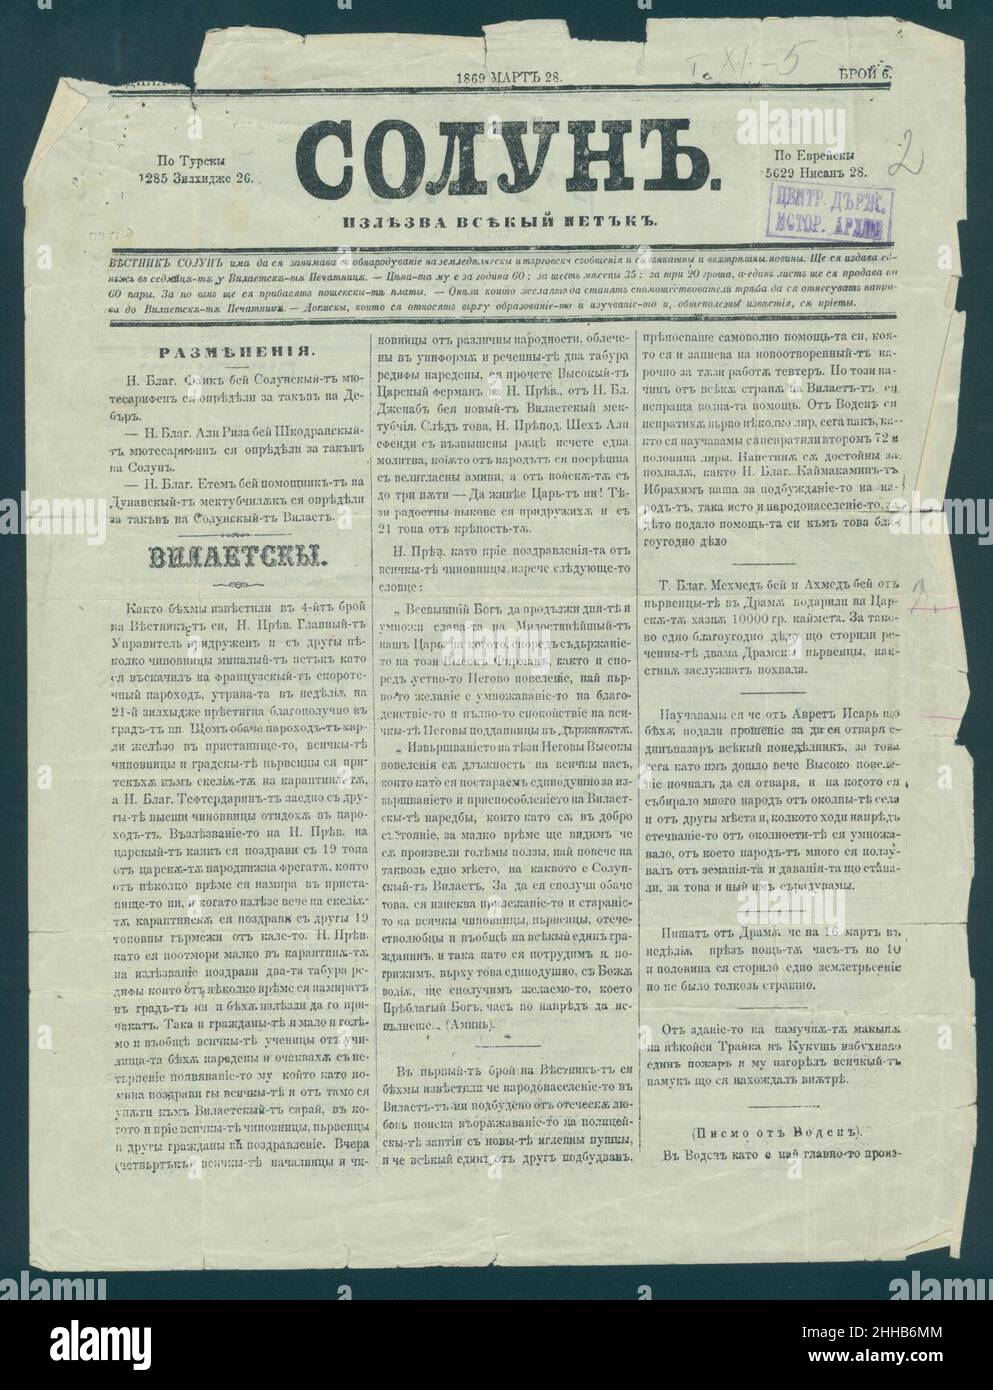 Solun Newspaper 1869-03-28 in Bulgarian. Stock Photo